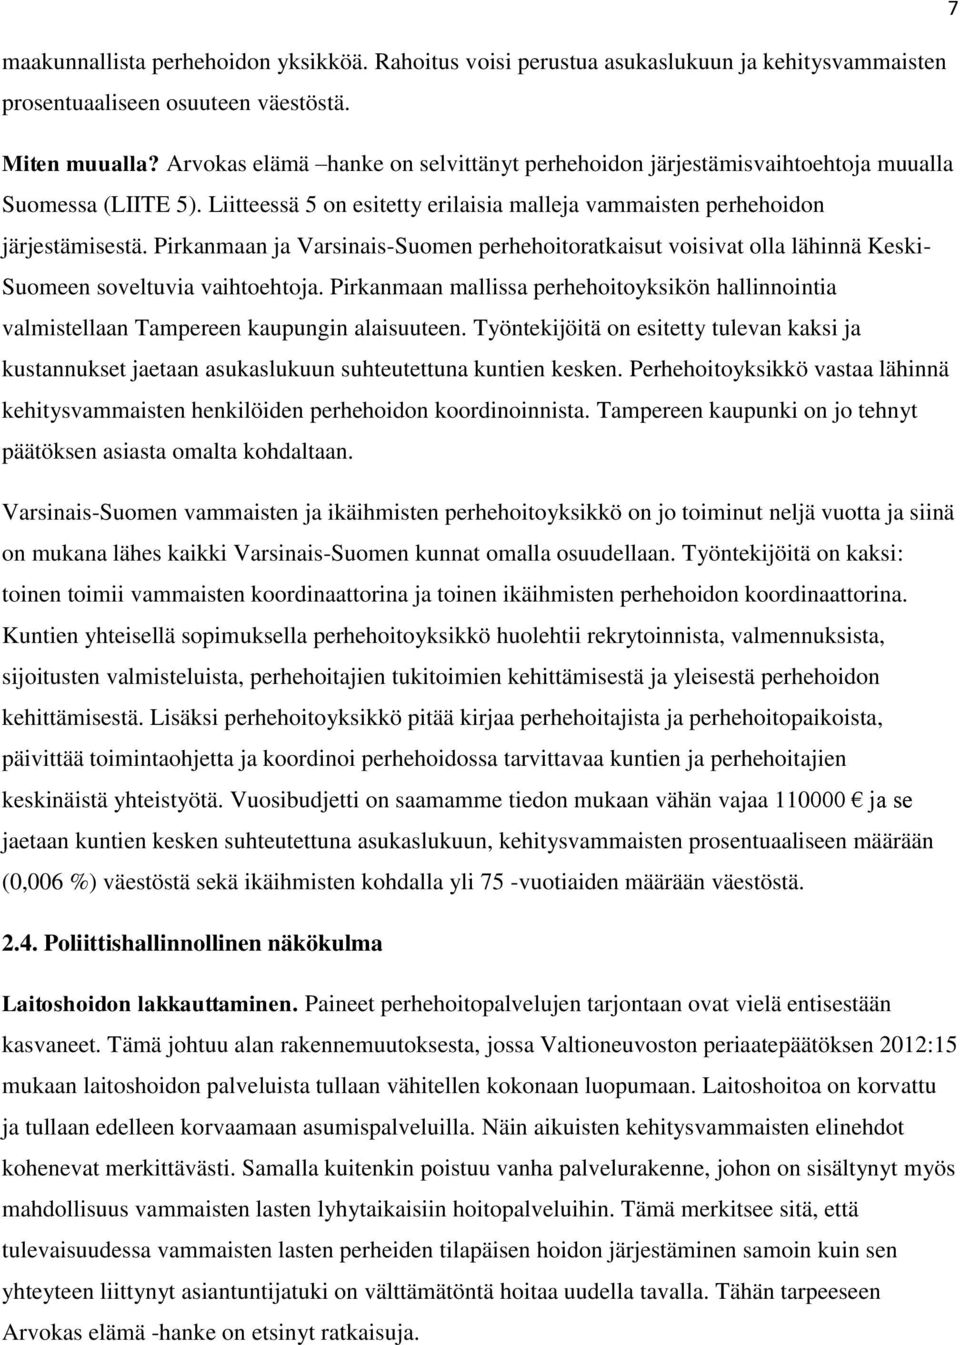 Pirkanmaan ja Varsinais-Suomen perhehoitoratkaisut voisivat olla lähinnä Keski- Suomeen soveltuvia vaihtoehtoja.